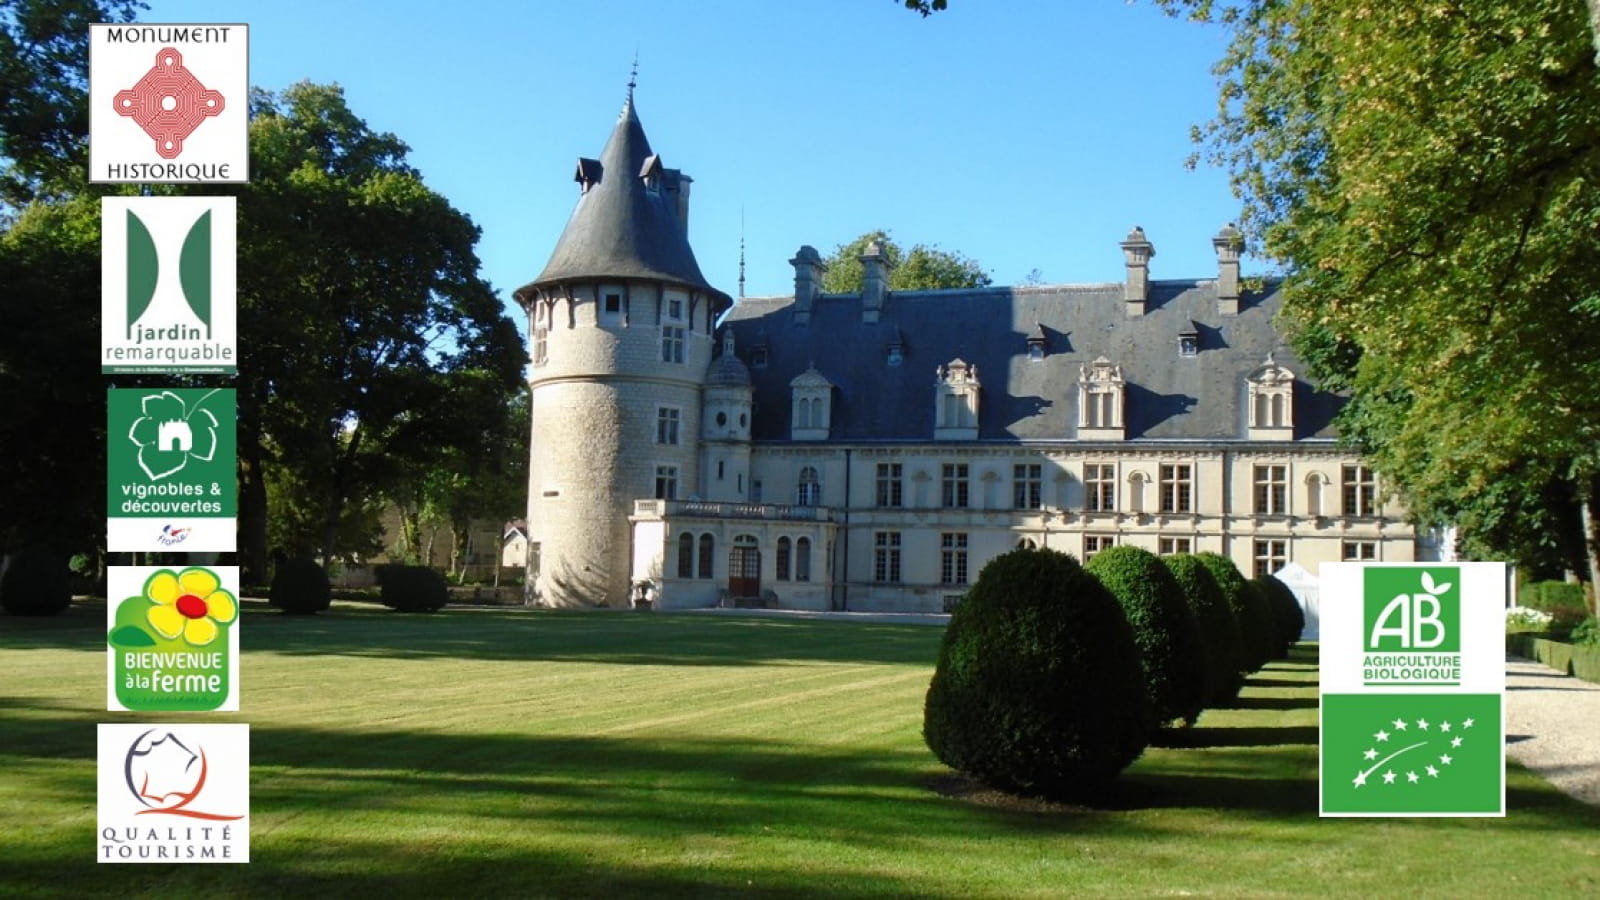 Les vergers-potagers du château de Montigny-sur-Aube